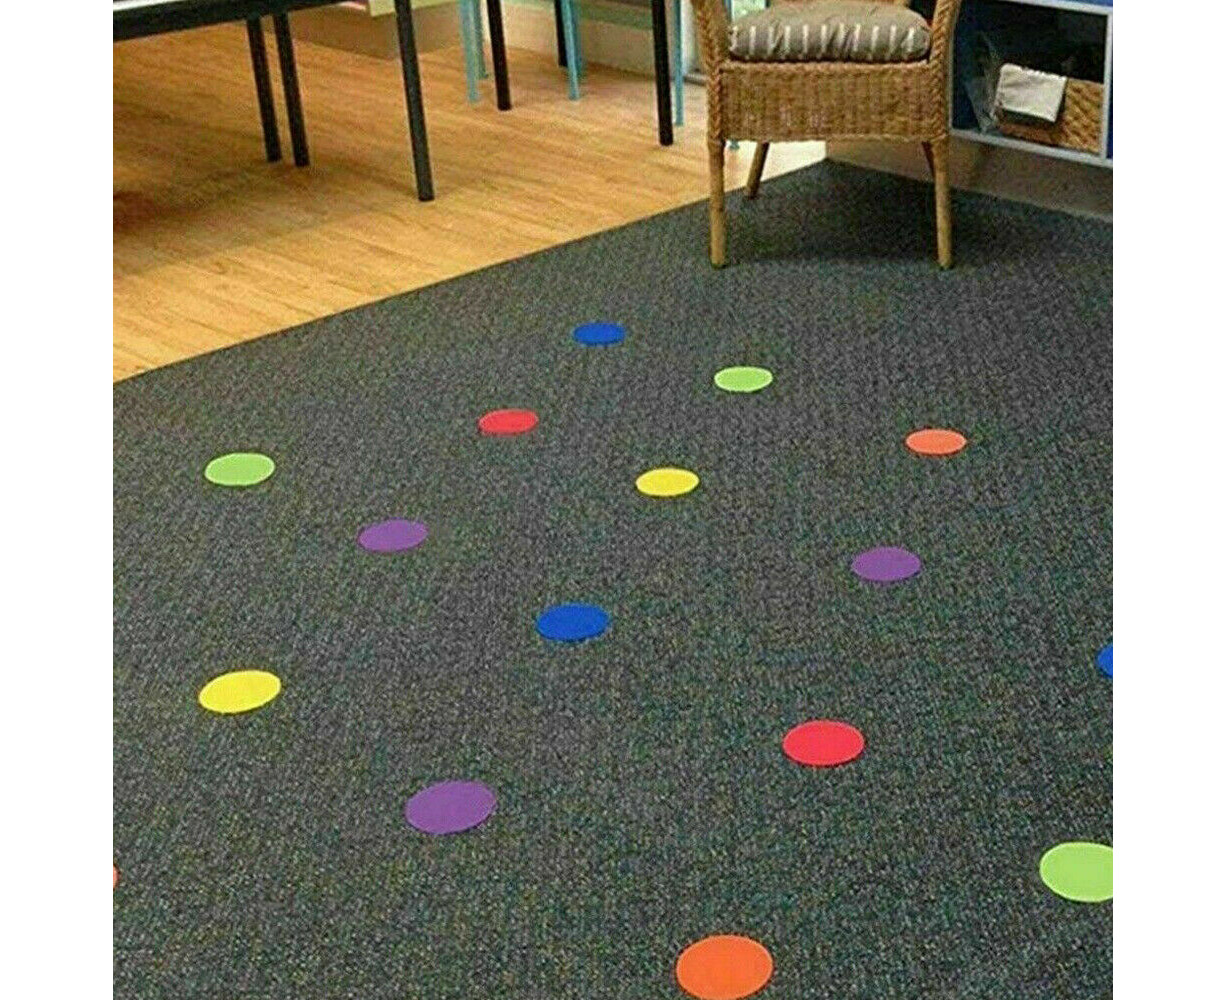  Velcro Carpet Spots